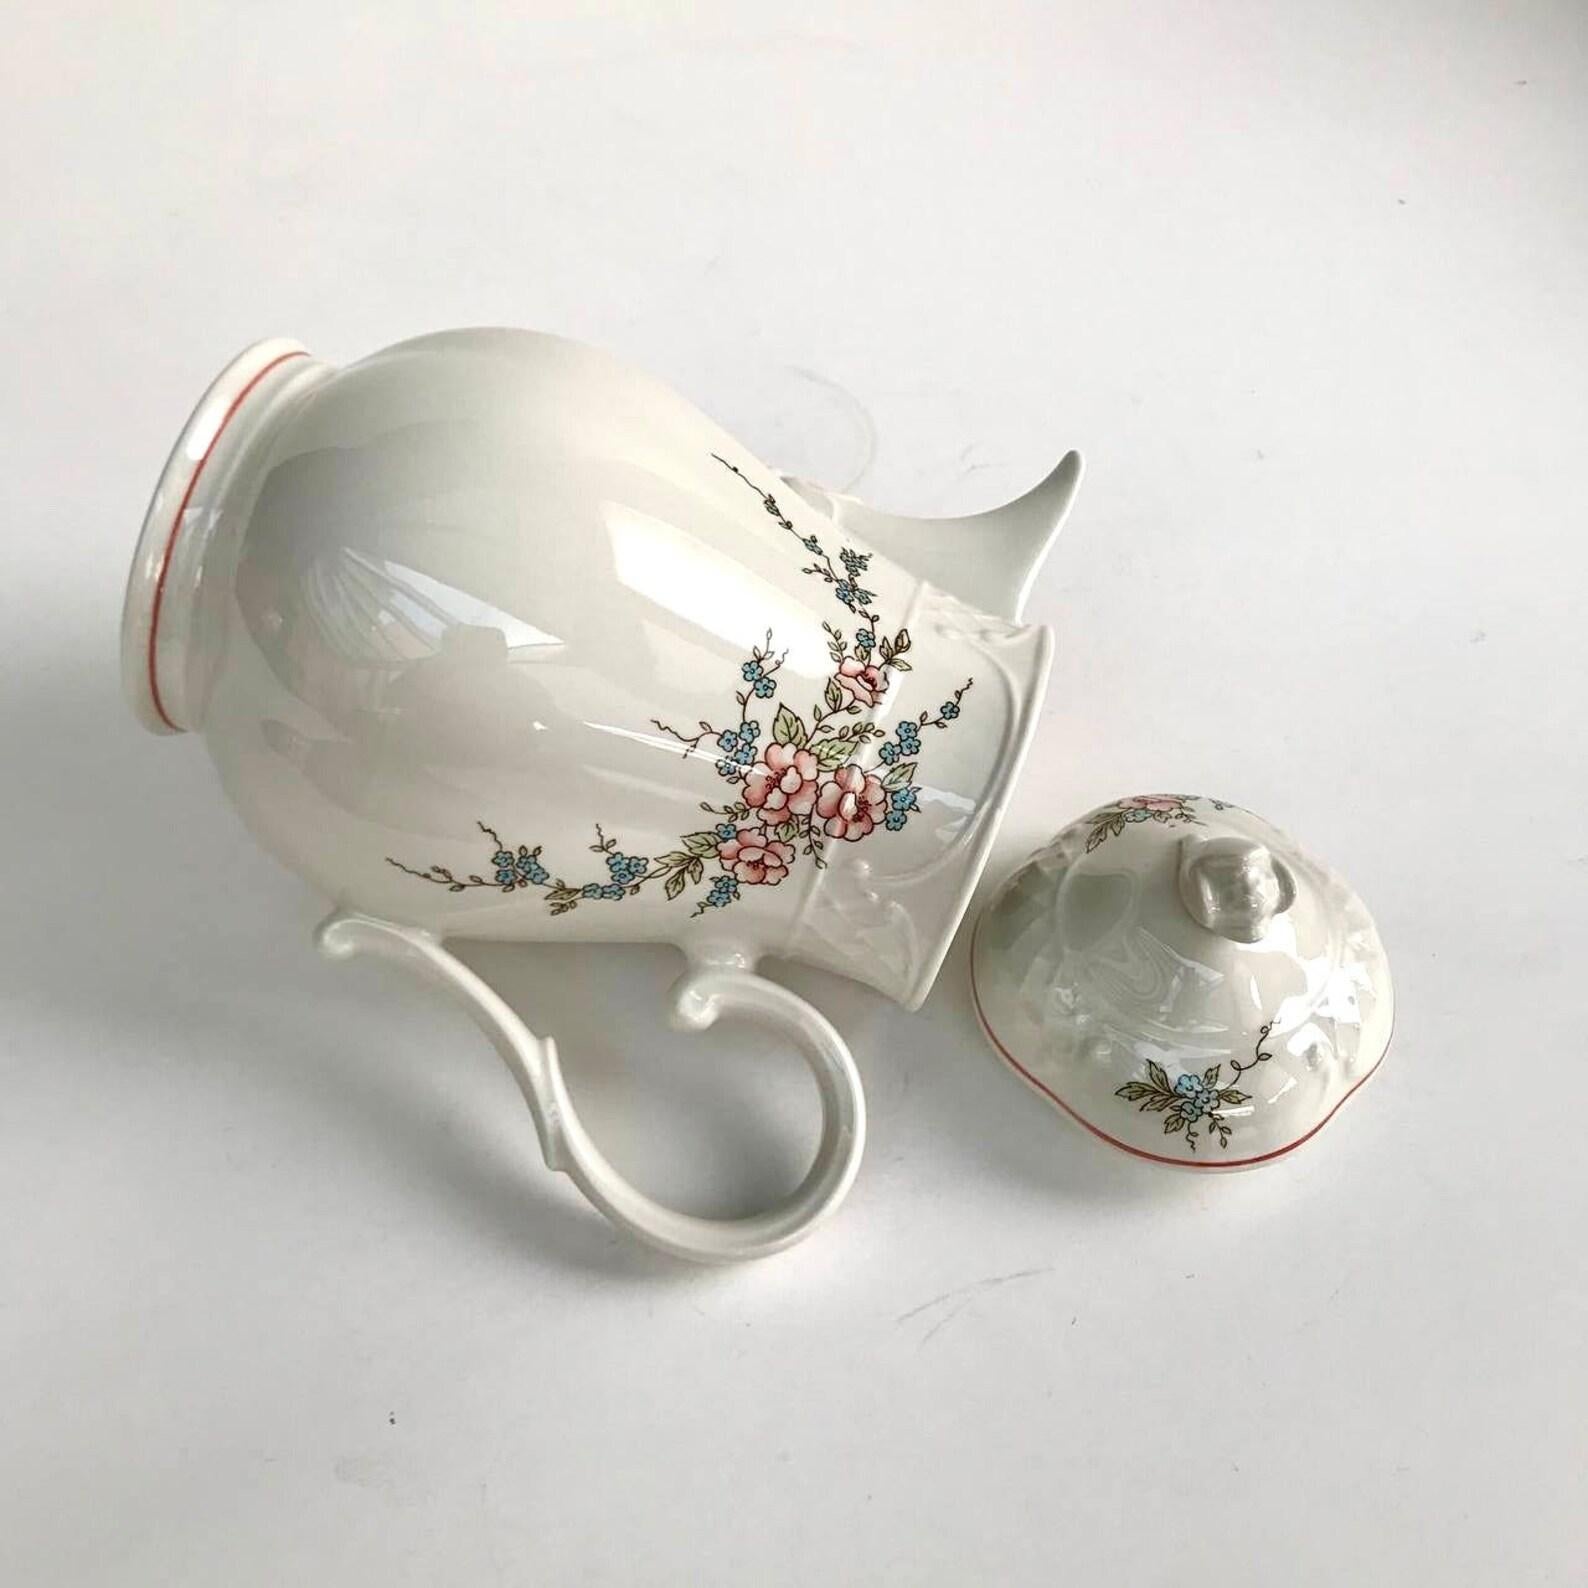 Vintage Villeroy & Boch Rosette Teapot  Porcelain Teapot with Flowers For Sale 2